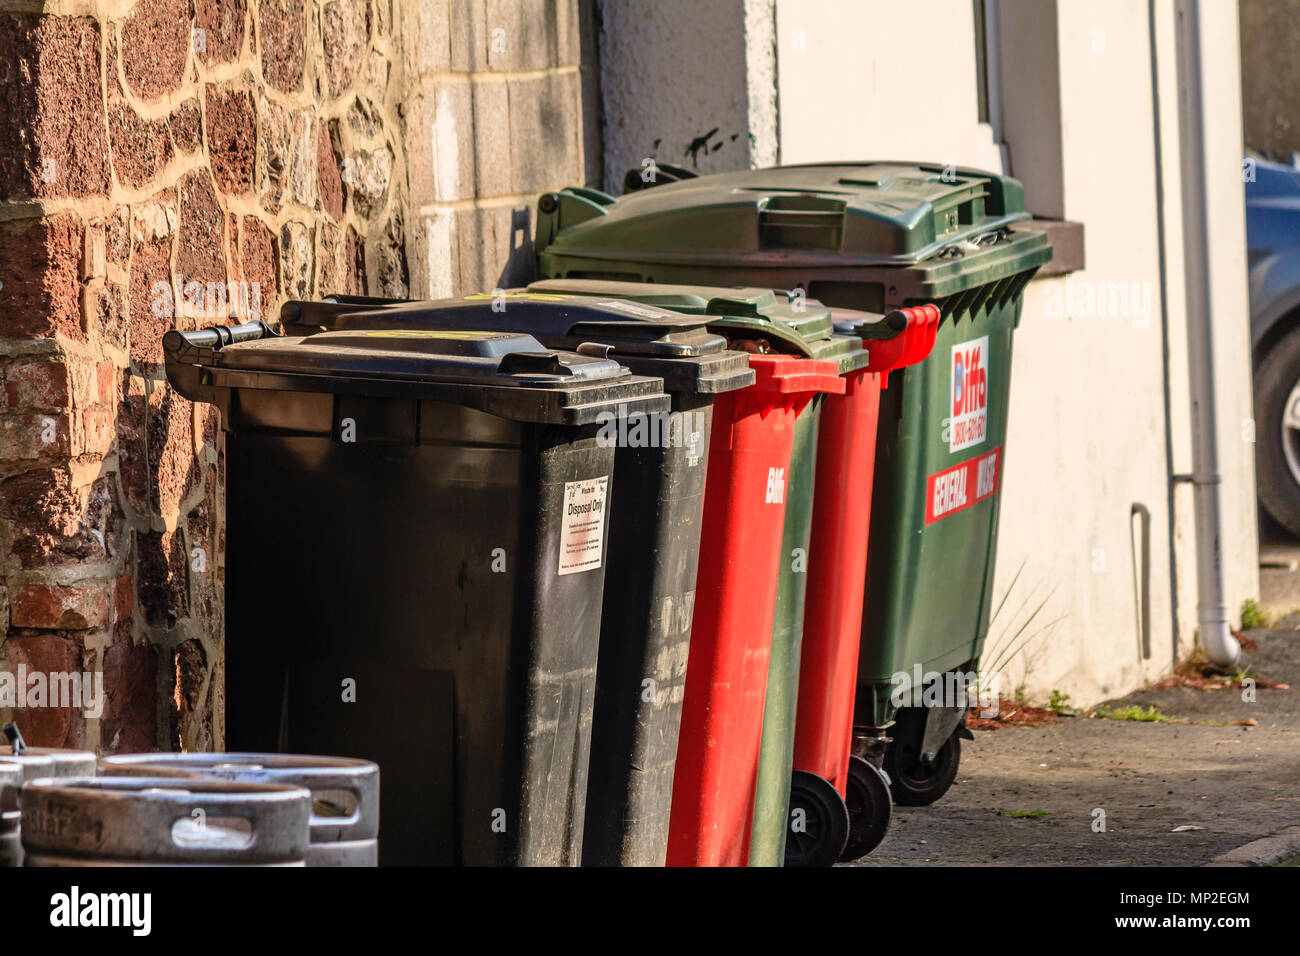 Reihe der großen bunten Mülleimern in einer Seitenstraße. Teignmouth, Devon. Feb 2018. Stockfoto